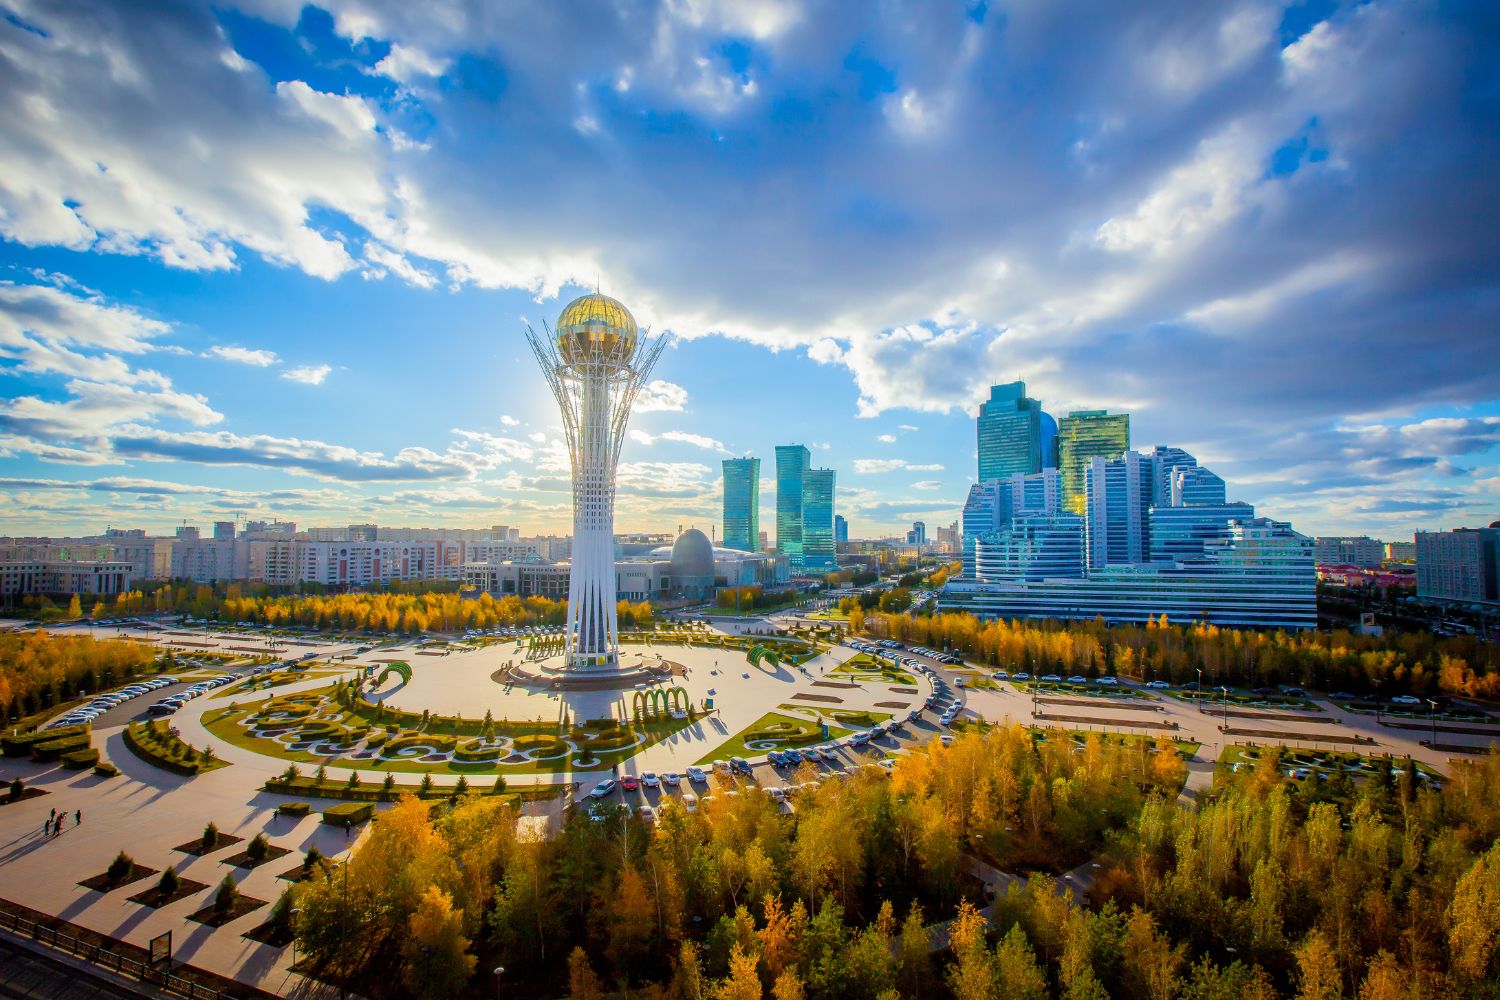 Kazakhstan 2